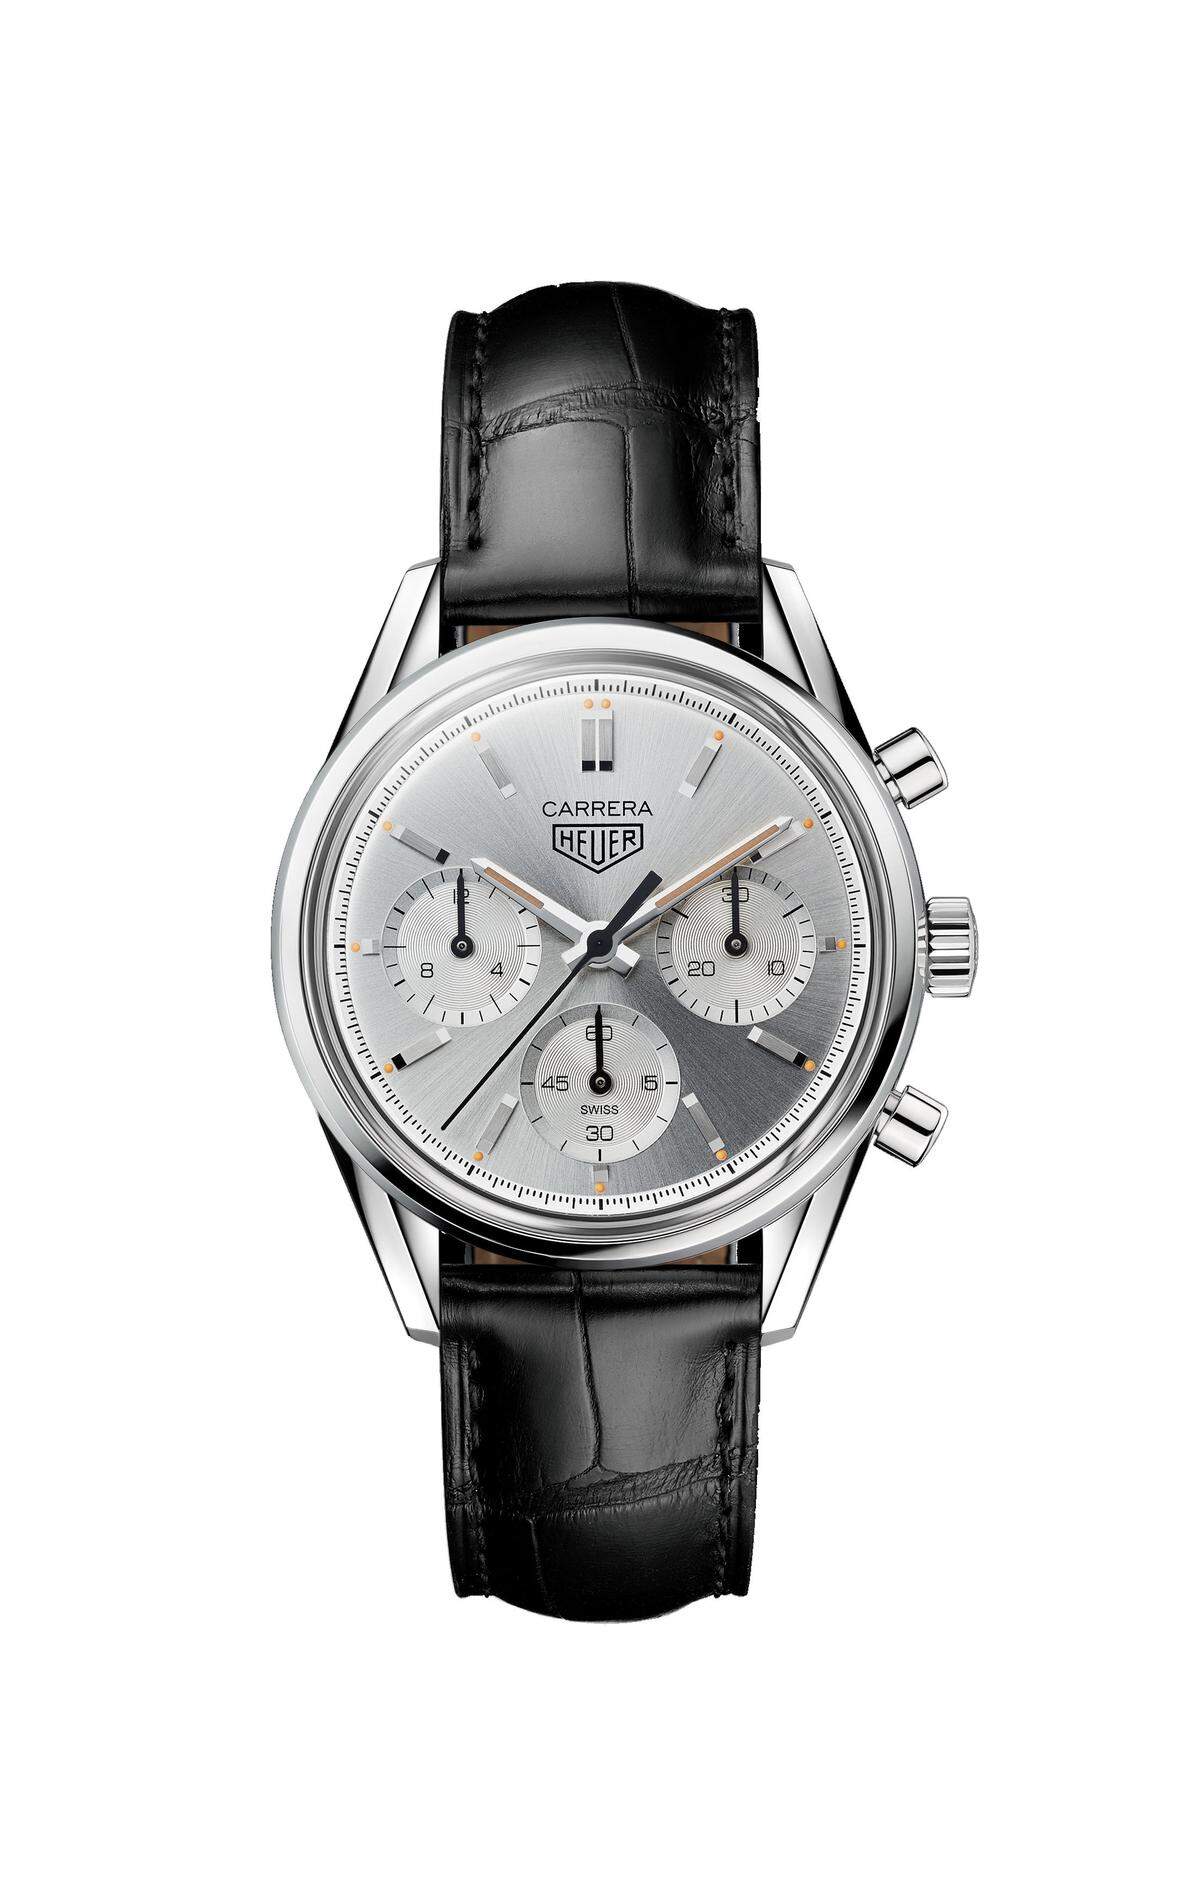 TAG Heuer "Carrera 160 Years Silver Limited Edition". Anlässlich des 160-jährigen Markenjubiläums hat der Schweizer Uhrenhersteller den Heuer-Carrera-Chronografen aus dem Jahr 1964 wiederaufgelegt. Im Inneren des Modells werkt aber jetzt das Manufakturwerk Heuer Calibre 02. Limitiert auf 1860 Stück.